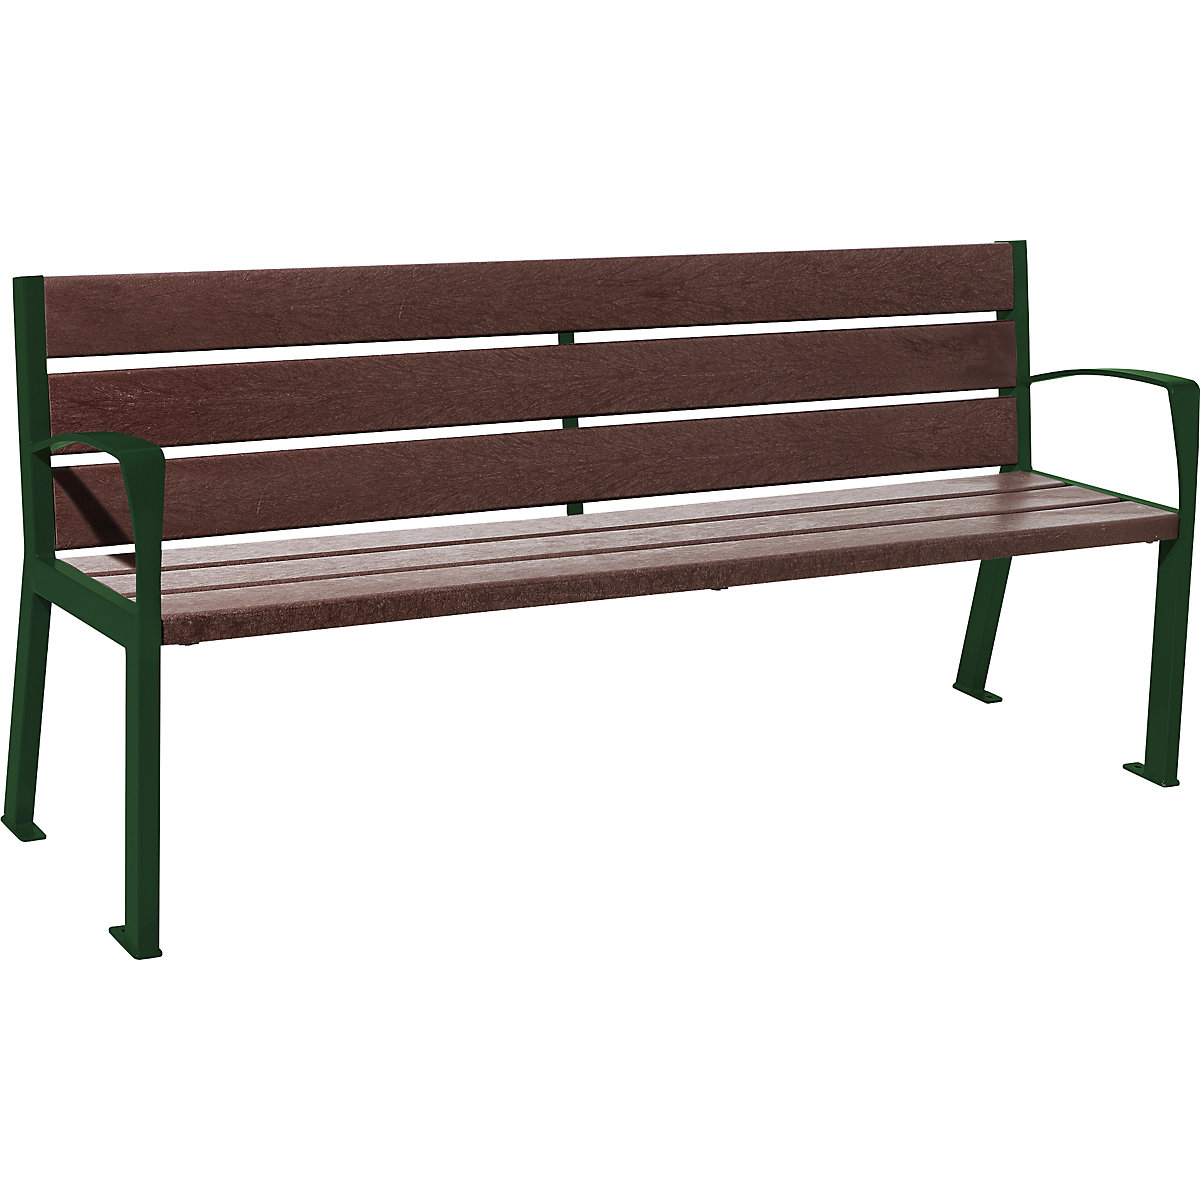 PROCITY Sitzbank SILAOS® aus Recycling-Kunststoff, mit Rückenlehne, moosgrün RAL 6005, braun, Standardarmlehnen, 6 Sitz- und Lehnenbohlen